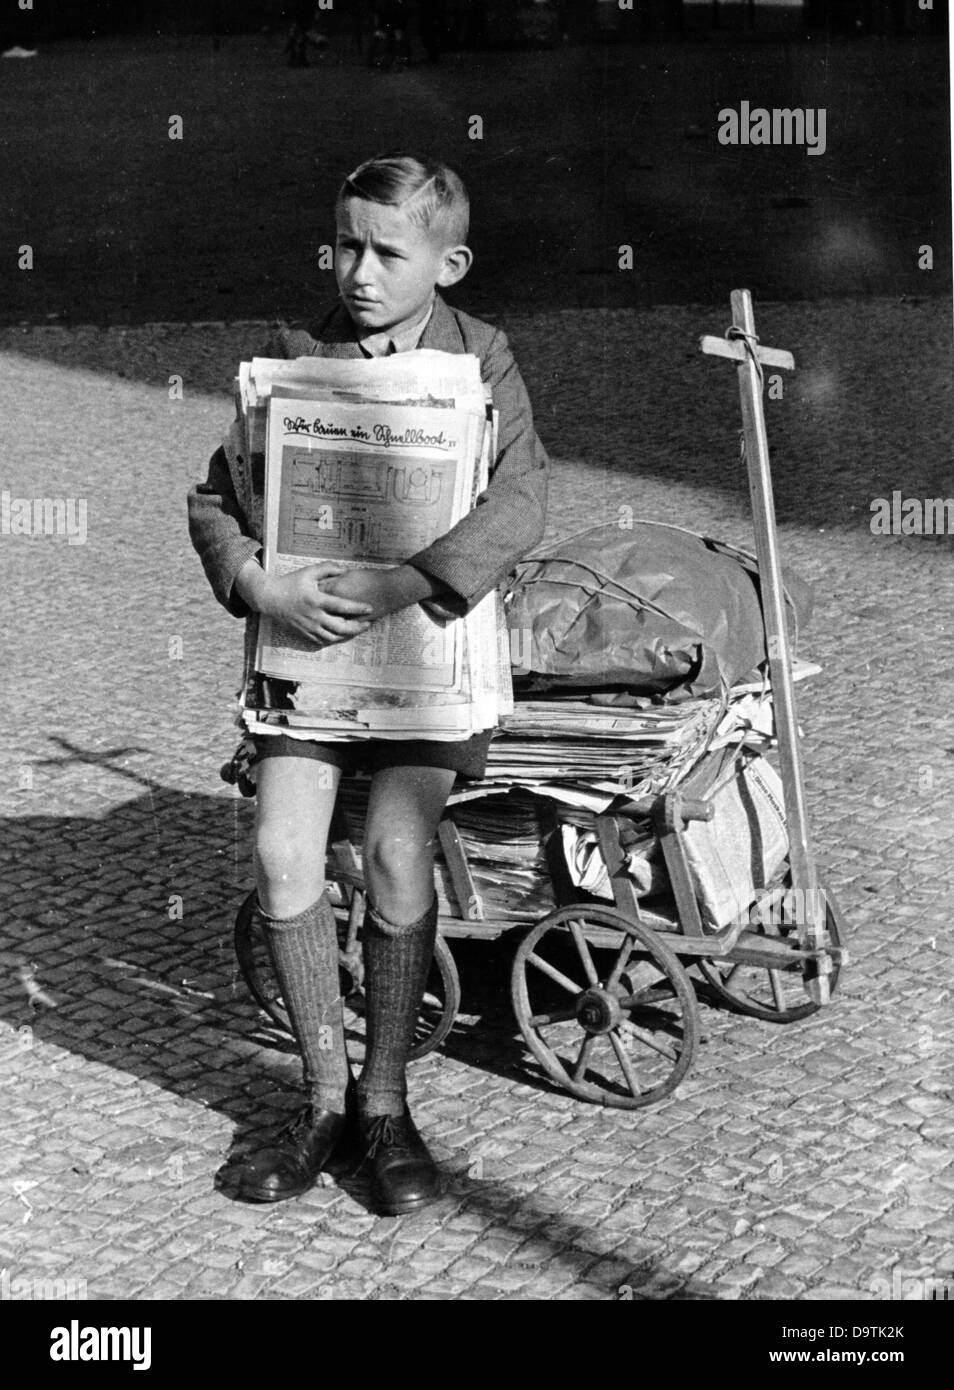 Un garçon a recueilli de vieux journaux et les amène au point de collecte de son école, en mars 1943. Fotoarchiv für Zeitgeschichte Banque D'Images